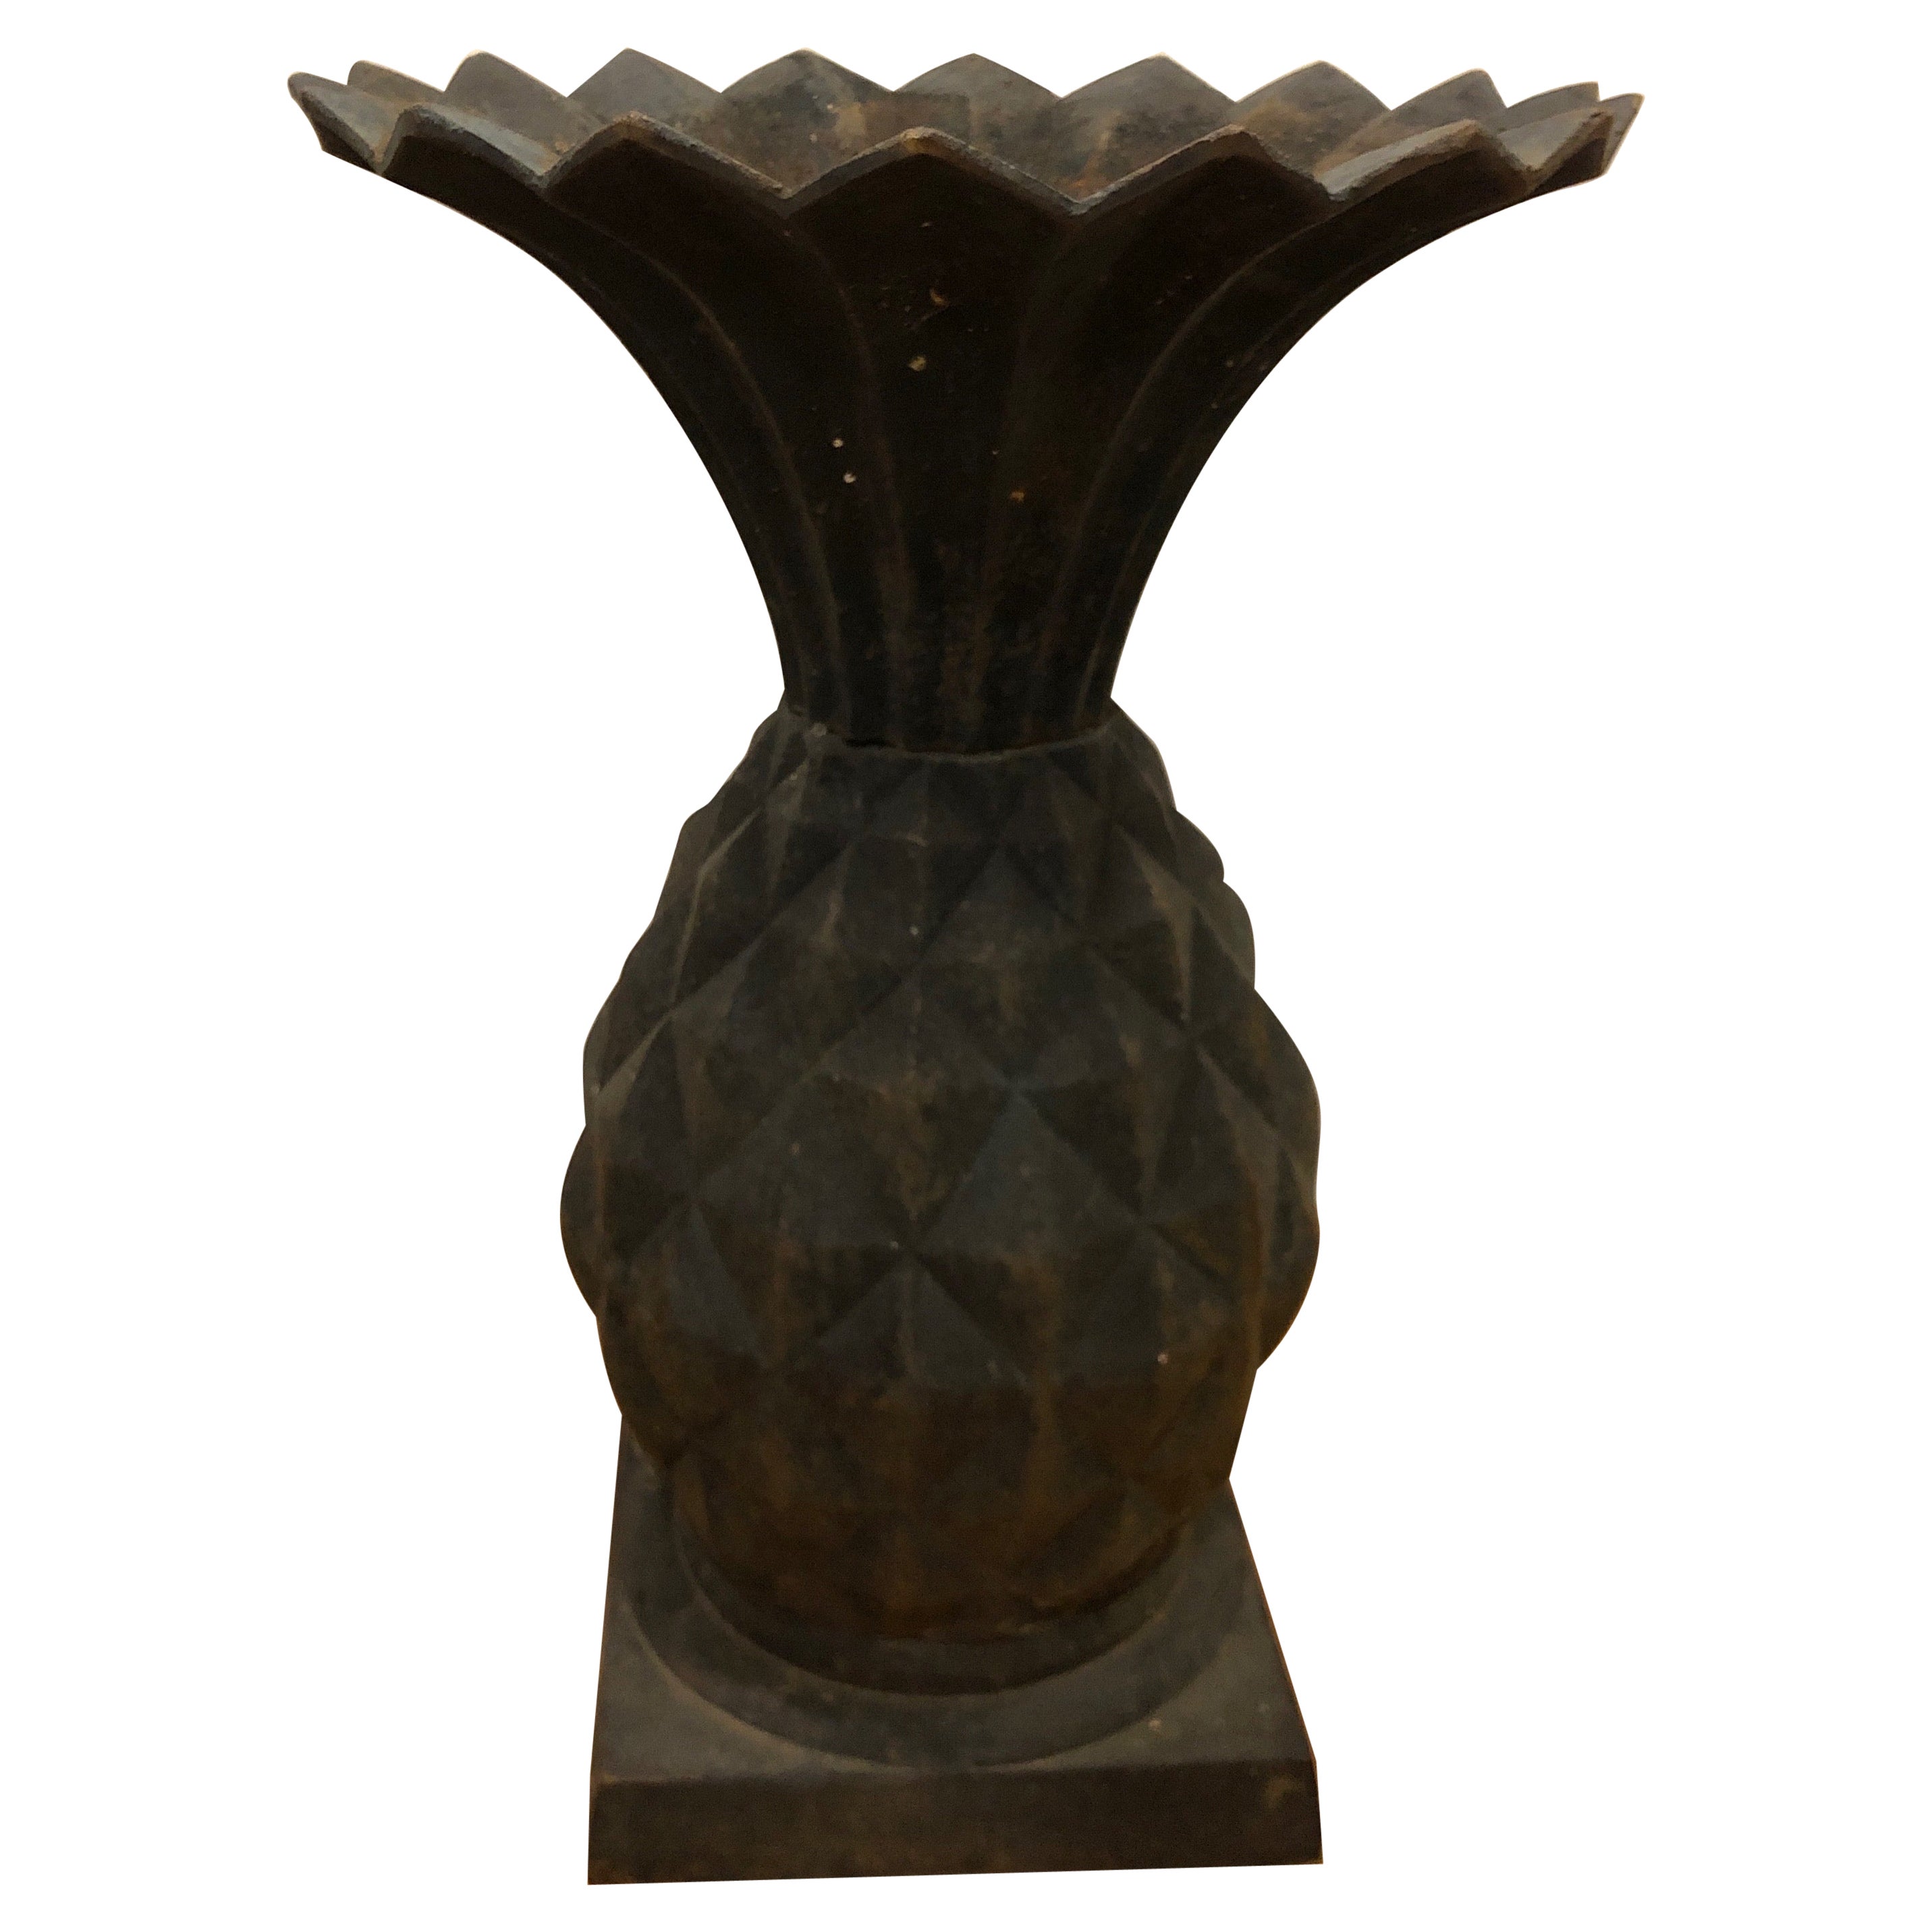 Antique Cast Iron Pineapple Planter Urn, Art Nouveau